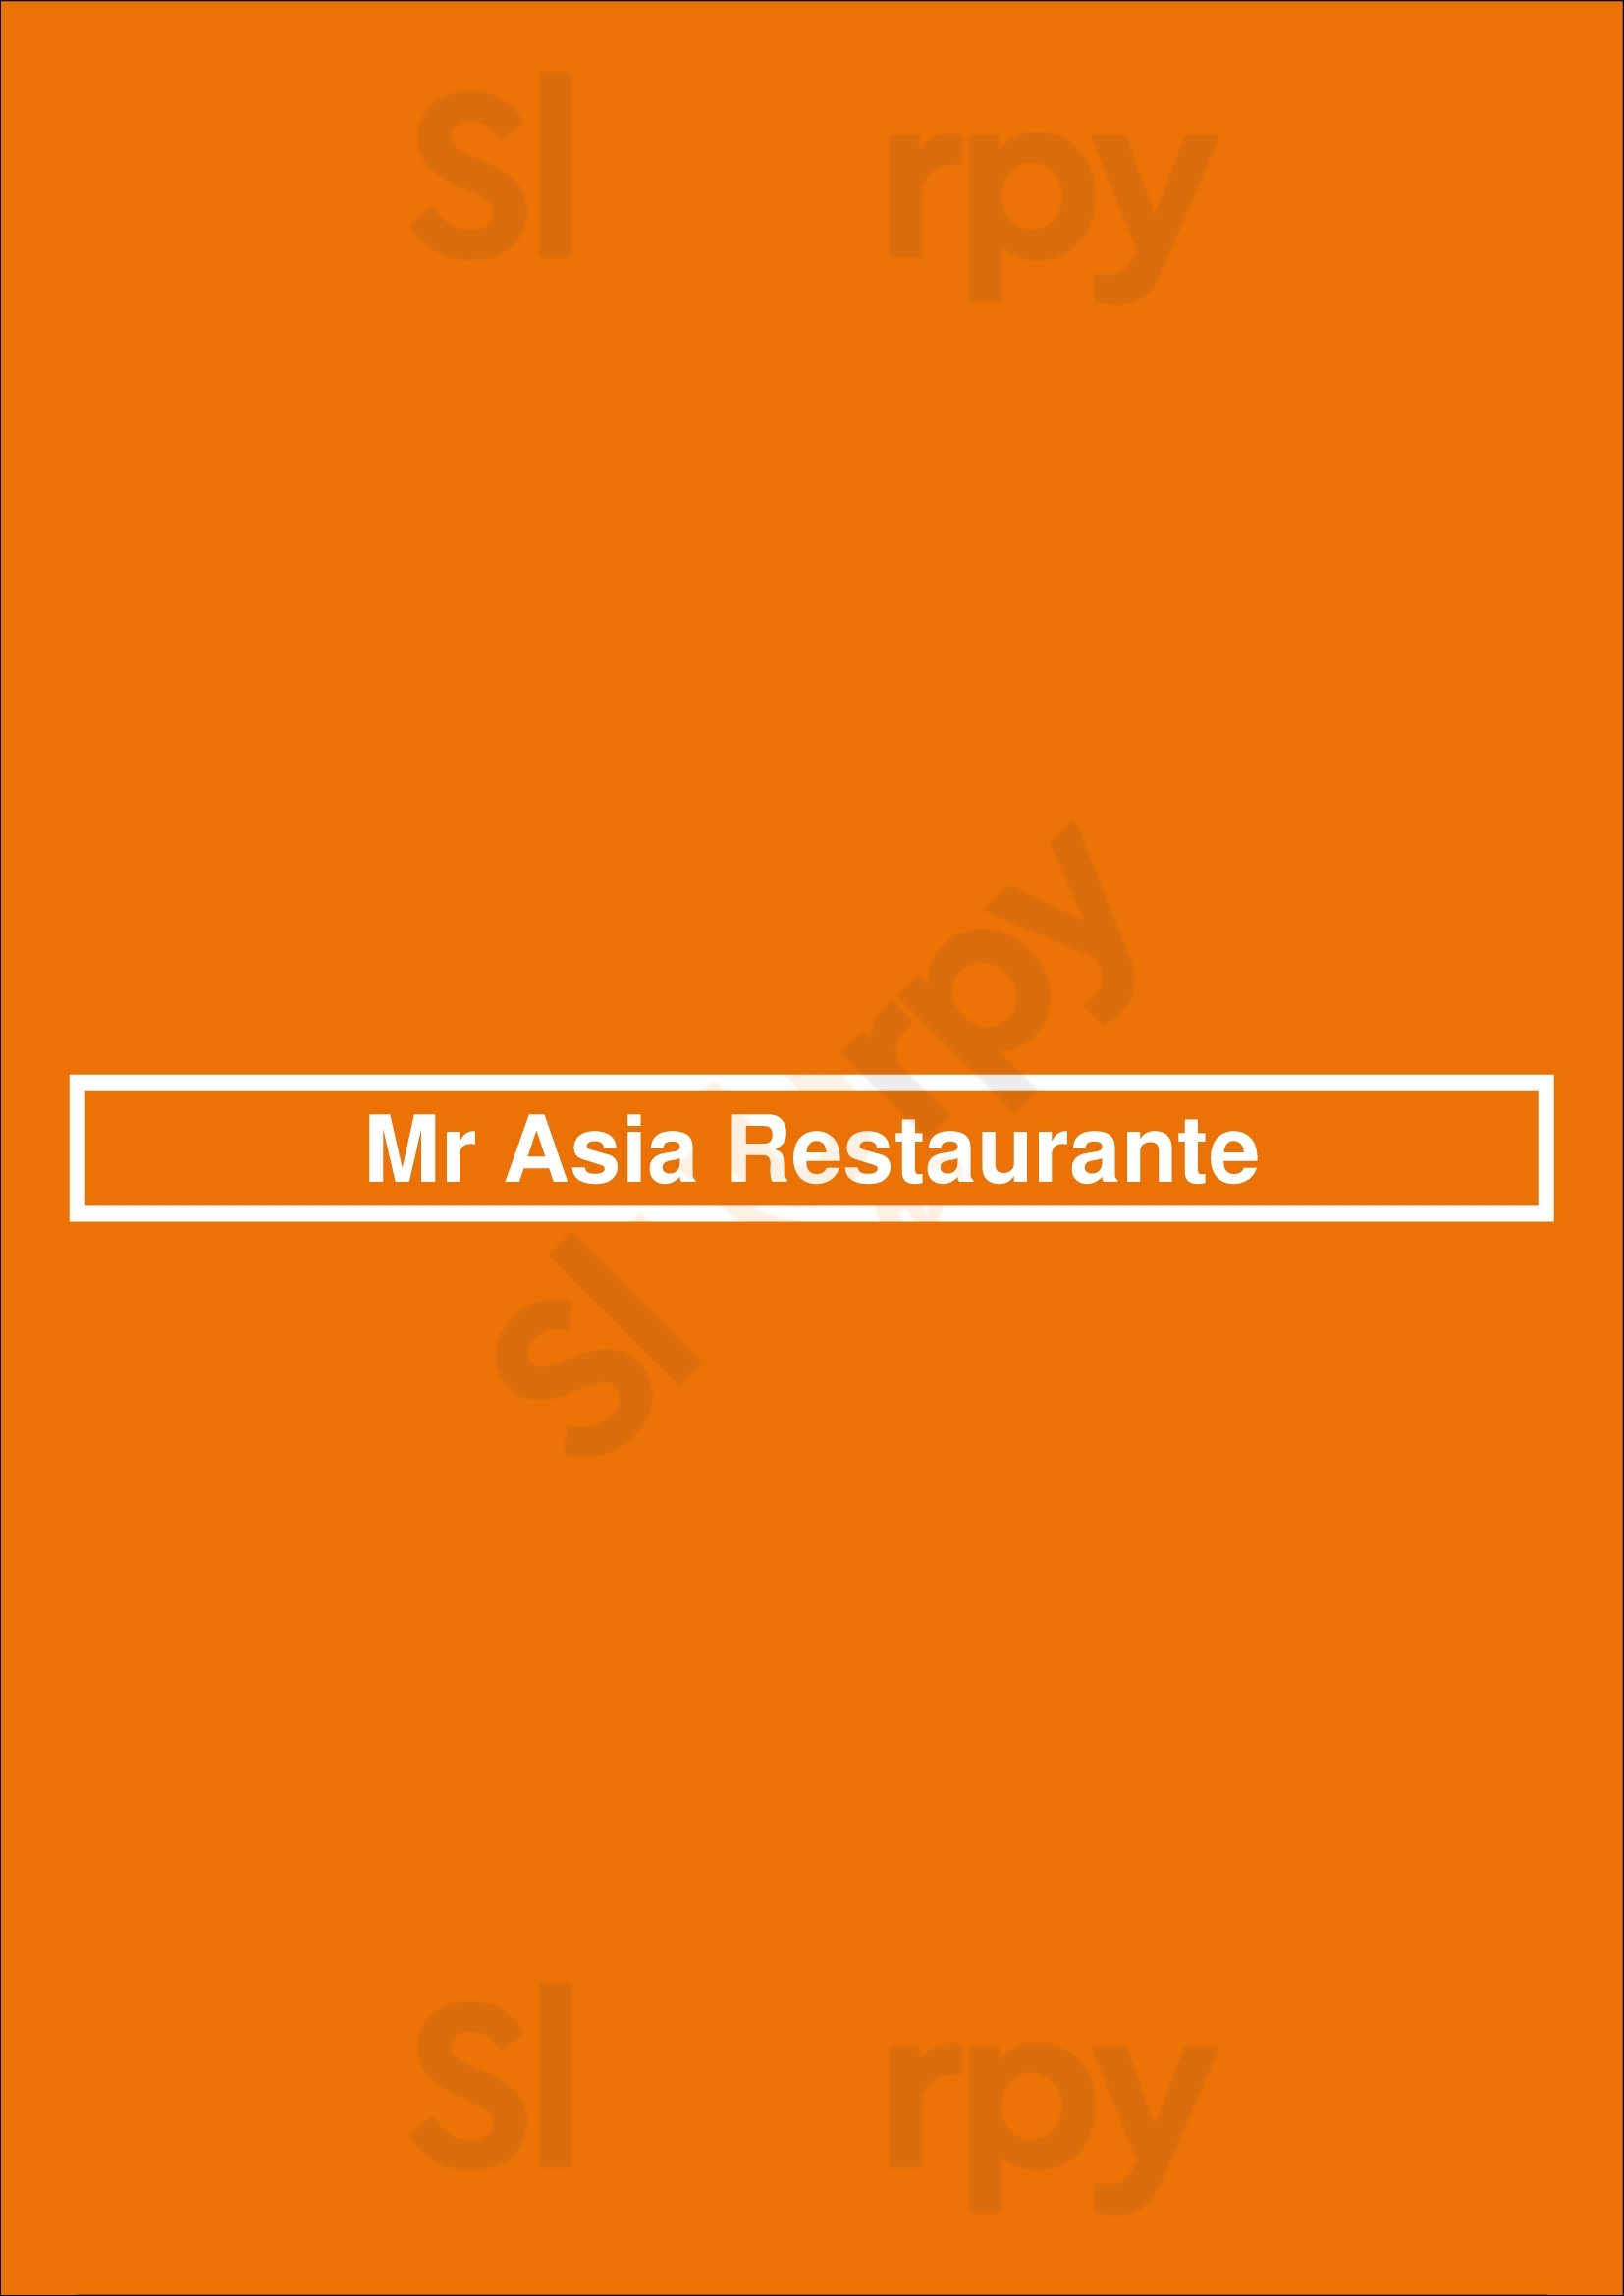 Mr Asia Restaurante Lisboa Menu - 1